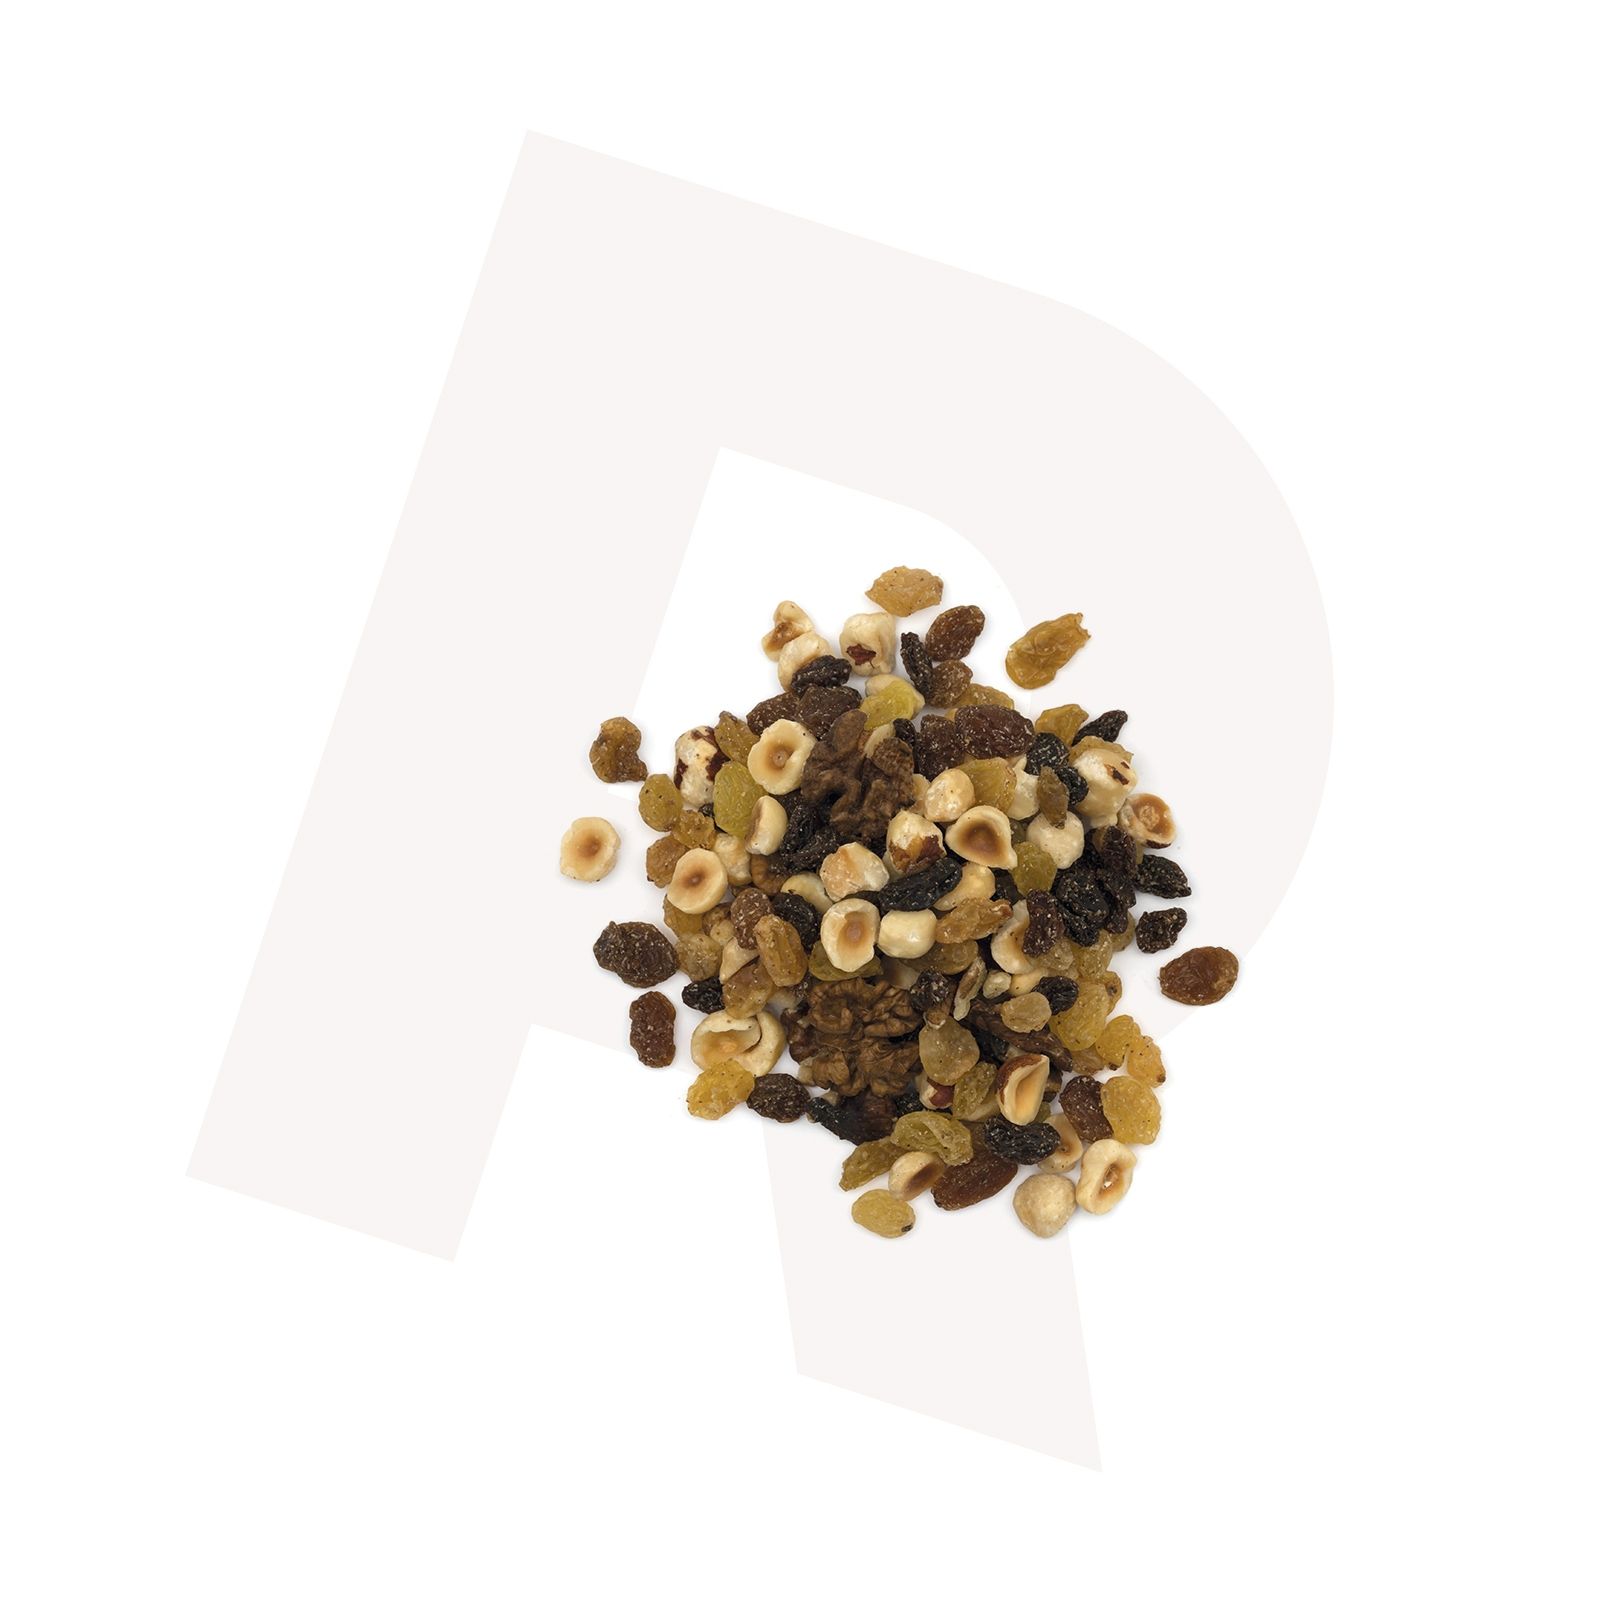 Nuts_nuts-raisin-mix